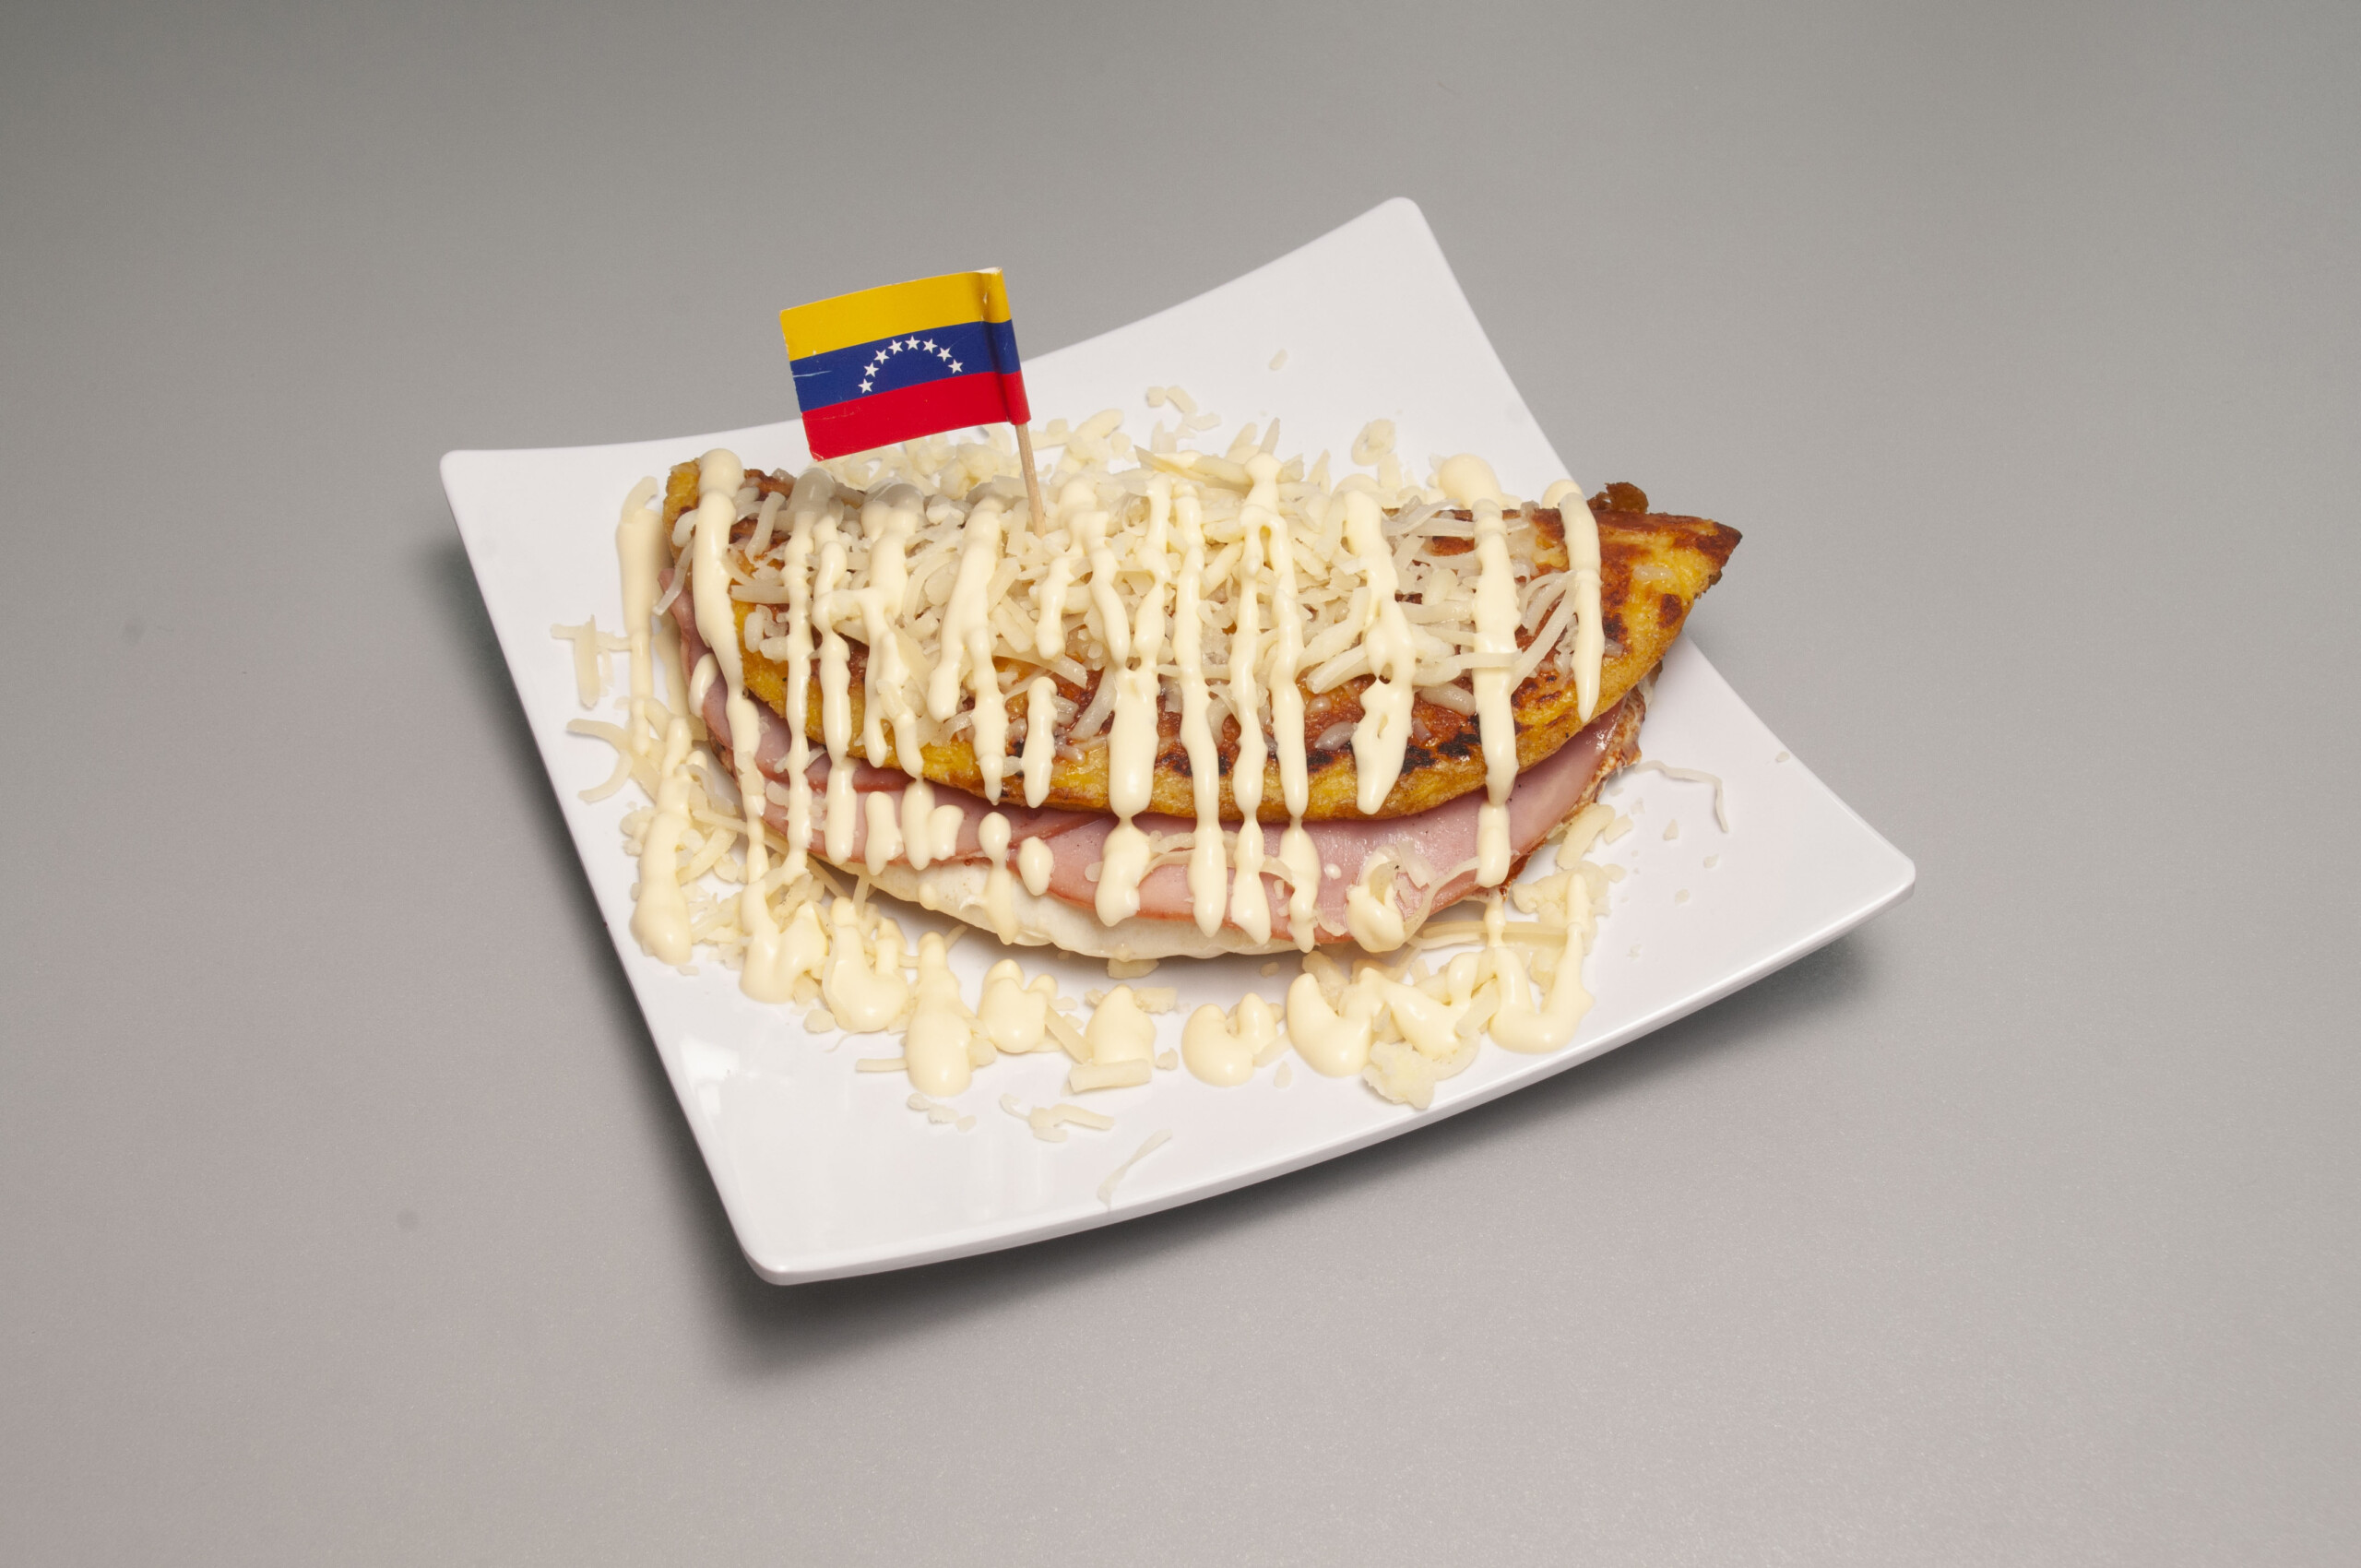 un plato con una cachapa venezolana servida con queso de mano